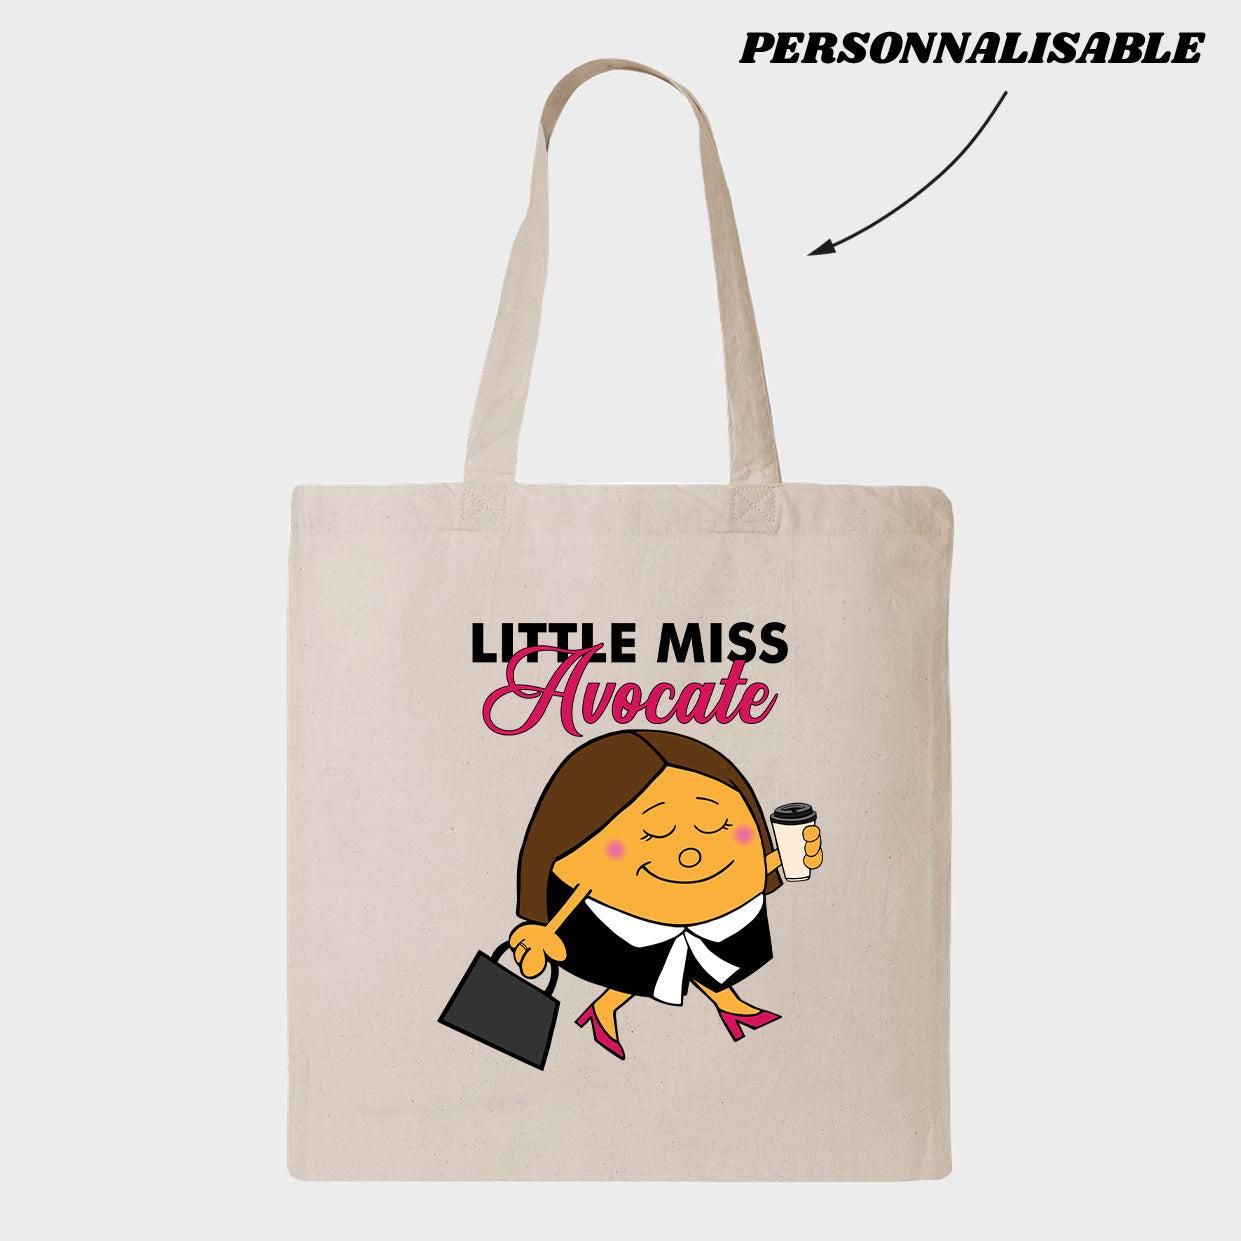 LITTLE MISS *PERSONNEL JURIDIQUE* tote bag personnalisable - tamelo boutique